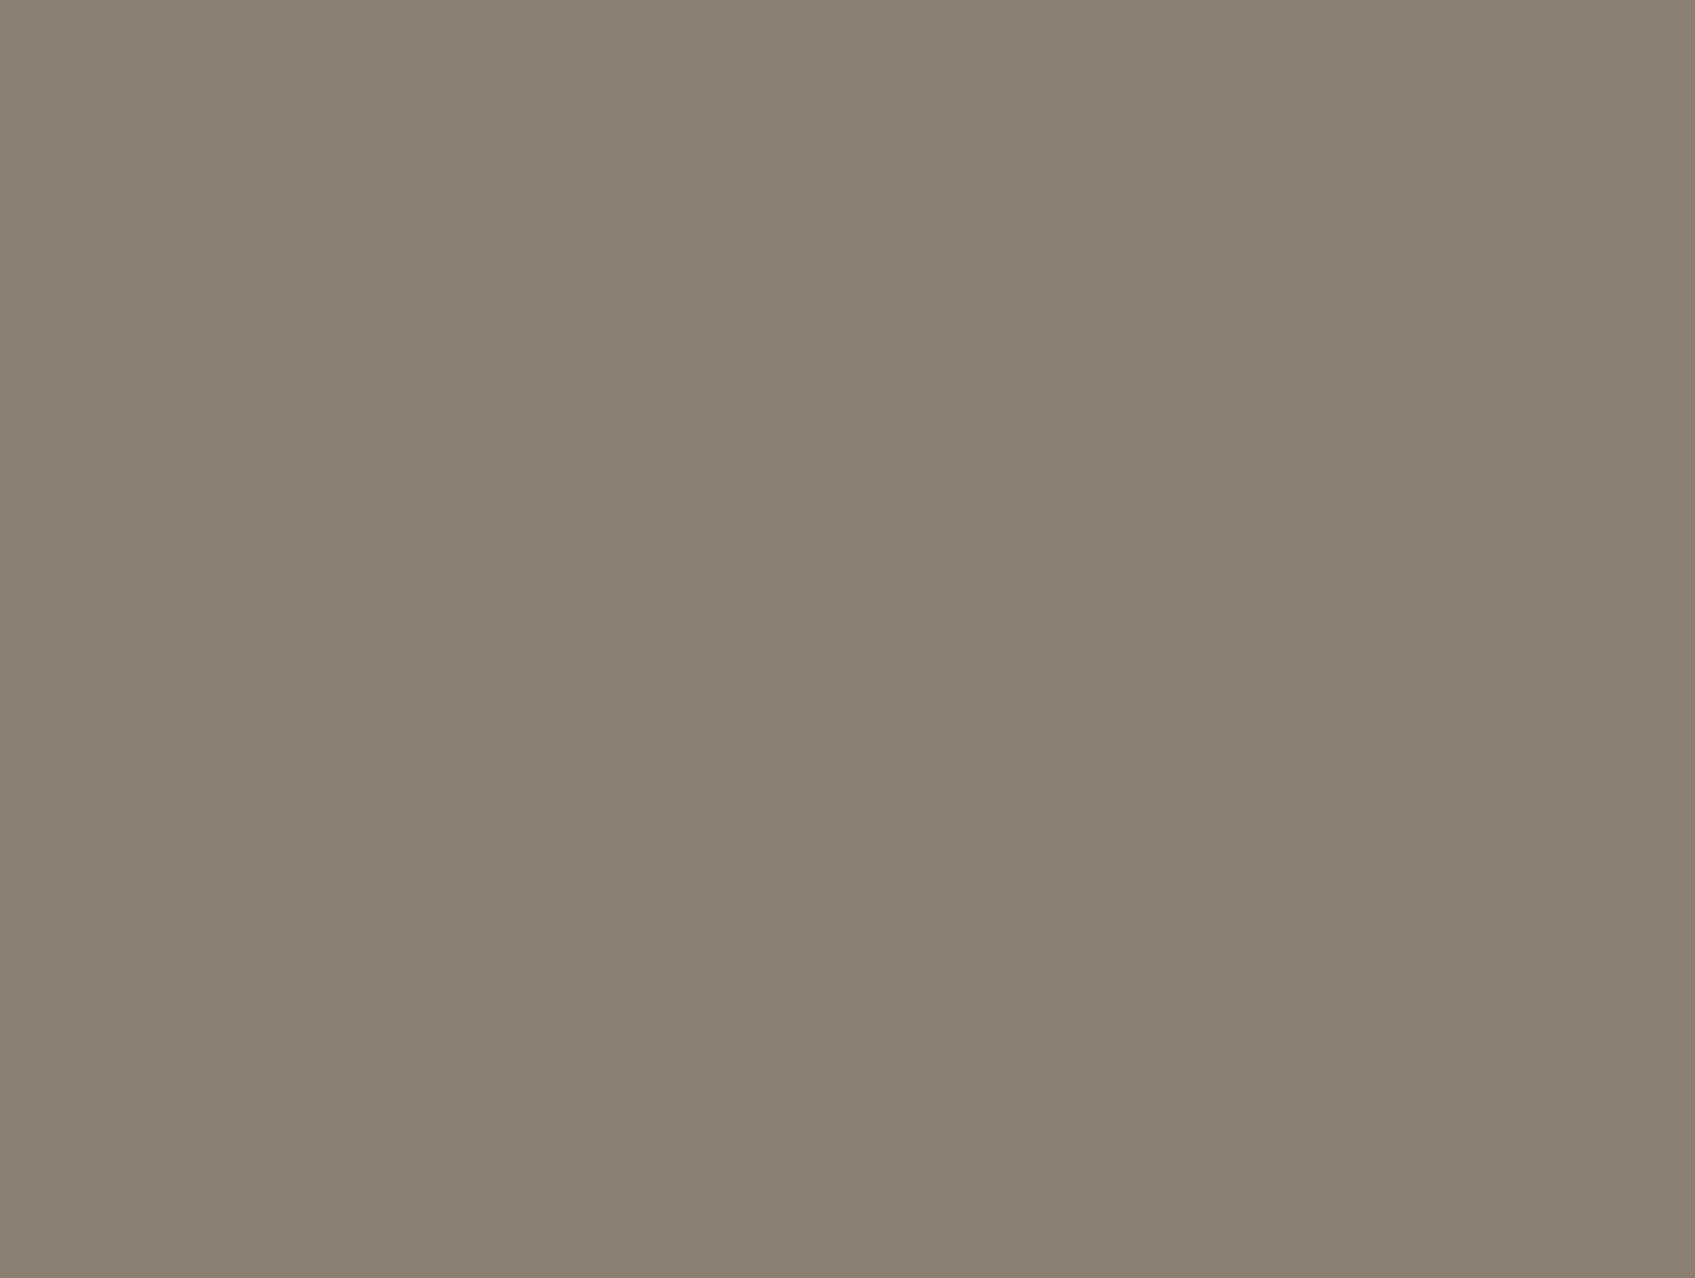 Шоферское свидетельство Лили Брик. Москва, 1929. Государственный музей В.В. Маяковского, Москва